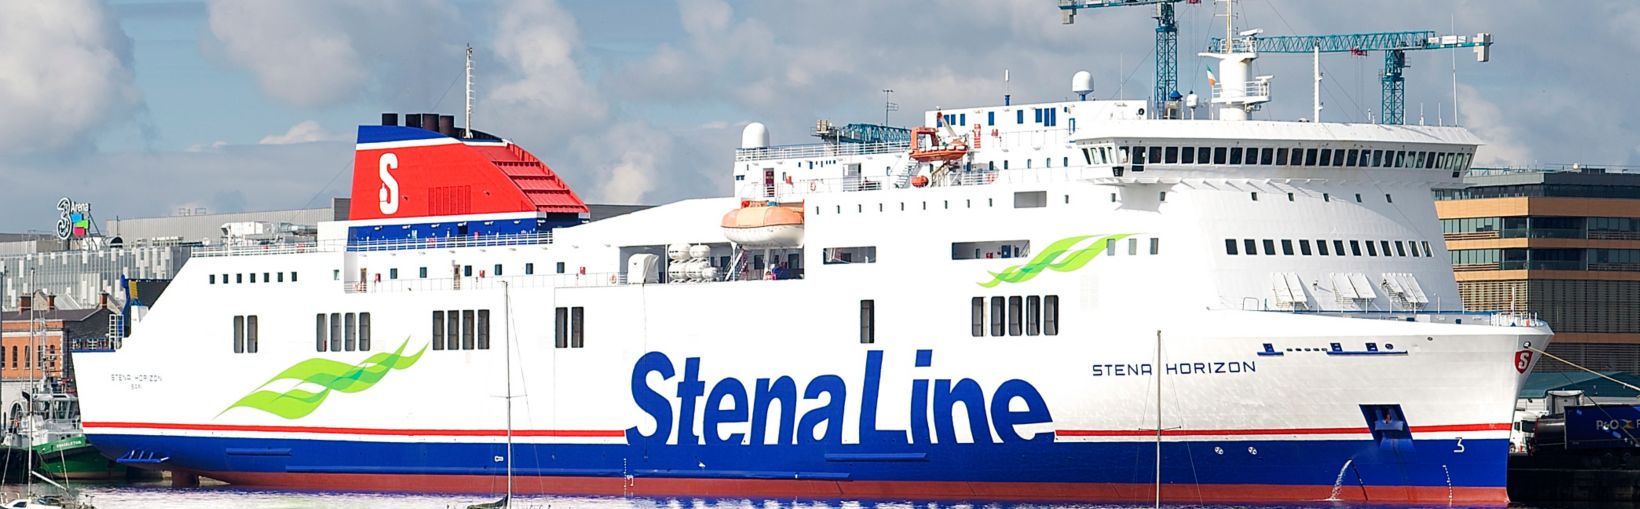 Stena Horizon Fähre im Hafen angedockt